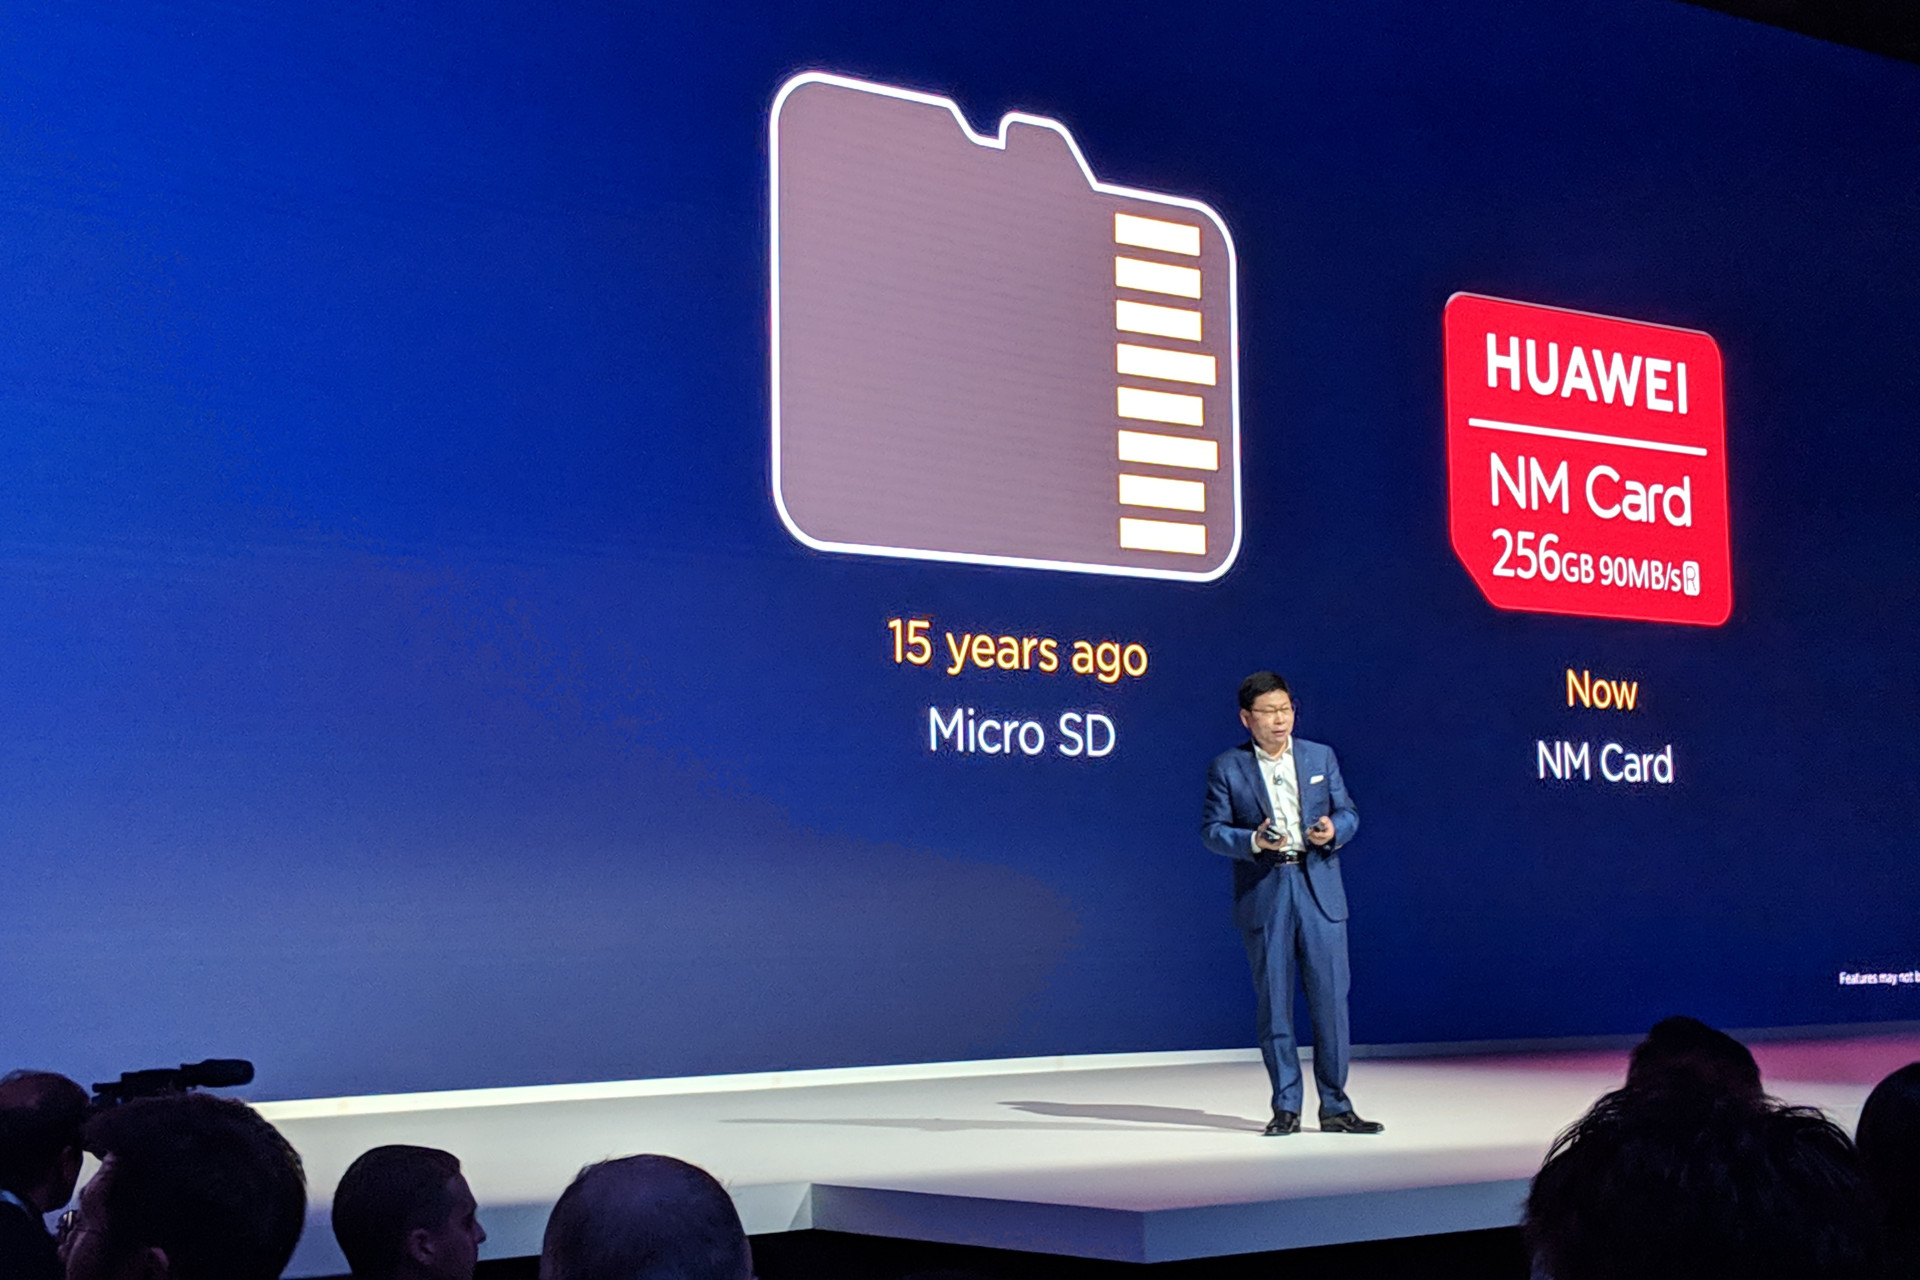 Huawei Nano Memory cards